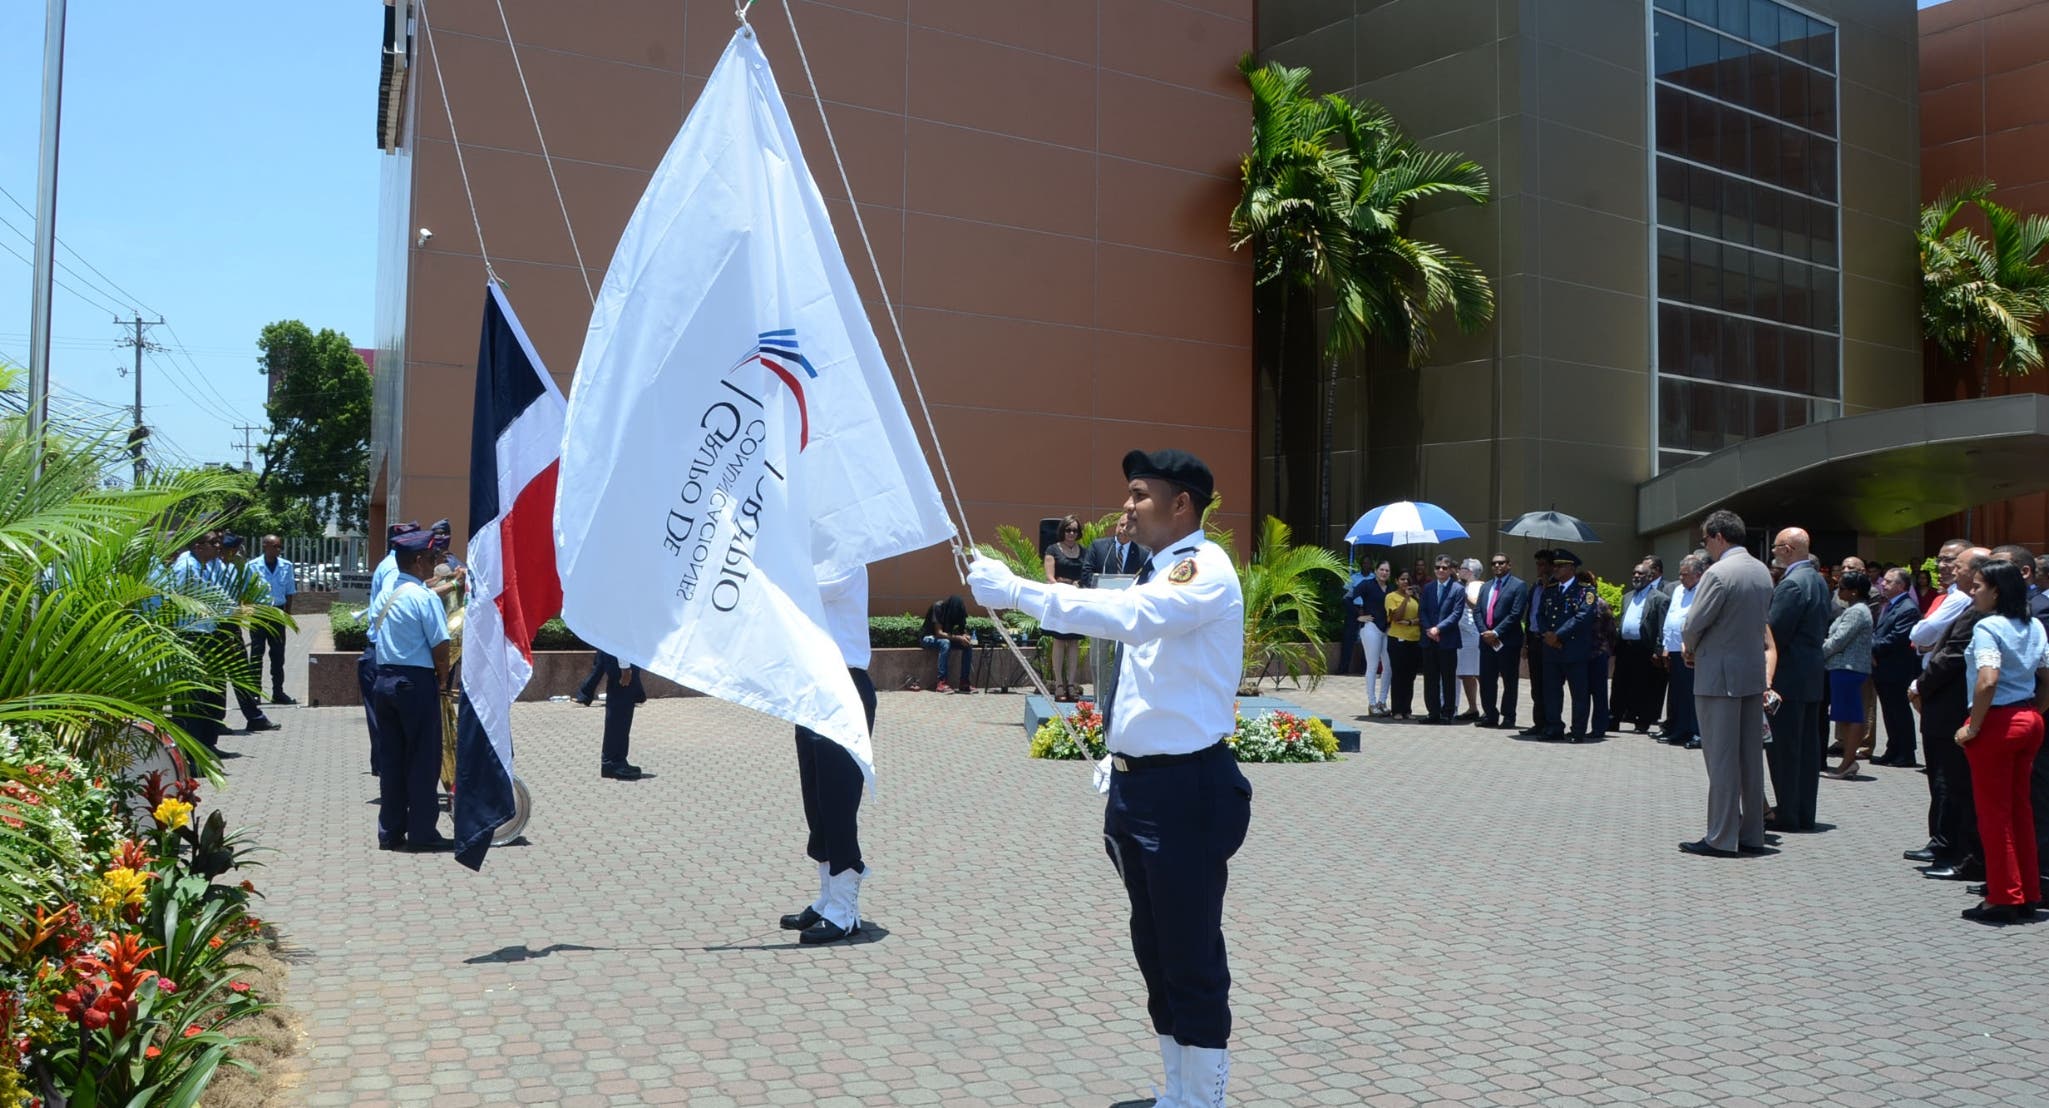 Grupo Corripio inaugura espacio para la bandera